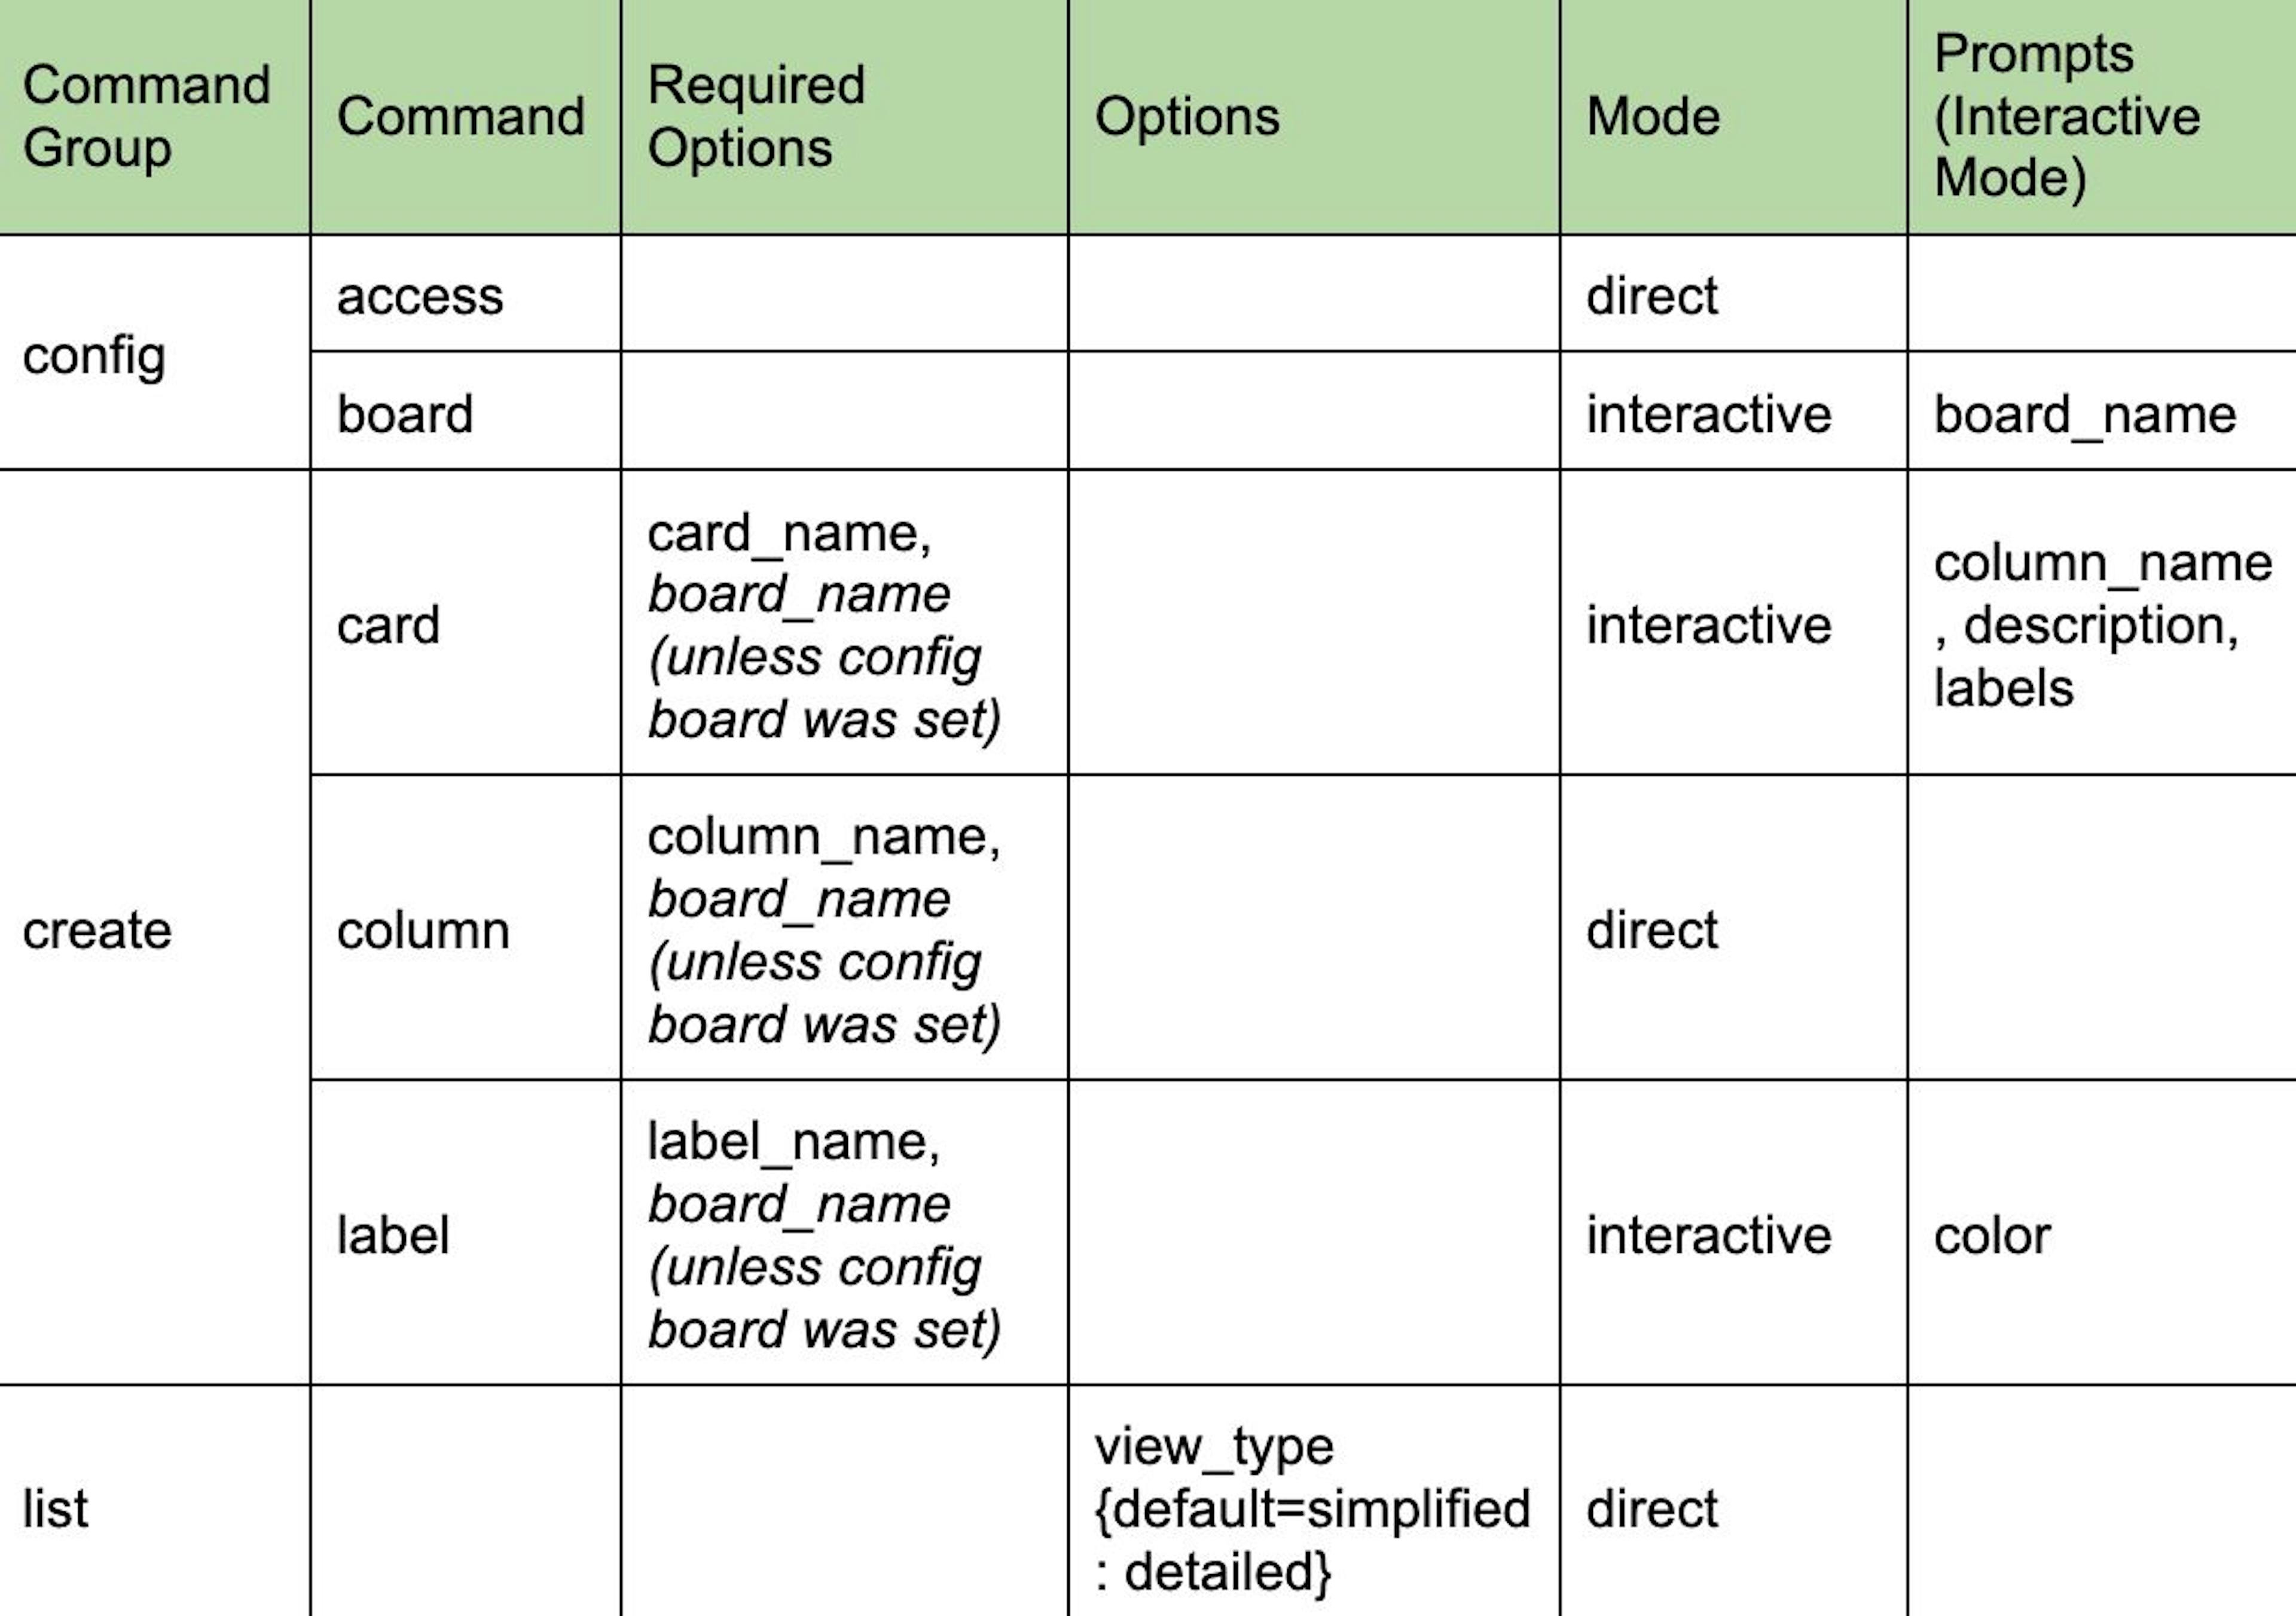 Detaillierte Tabellenansicht der CLI-Struktur basierend auf den Anforderungen